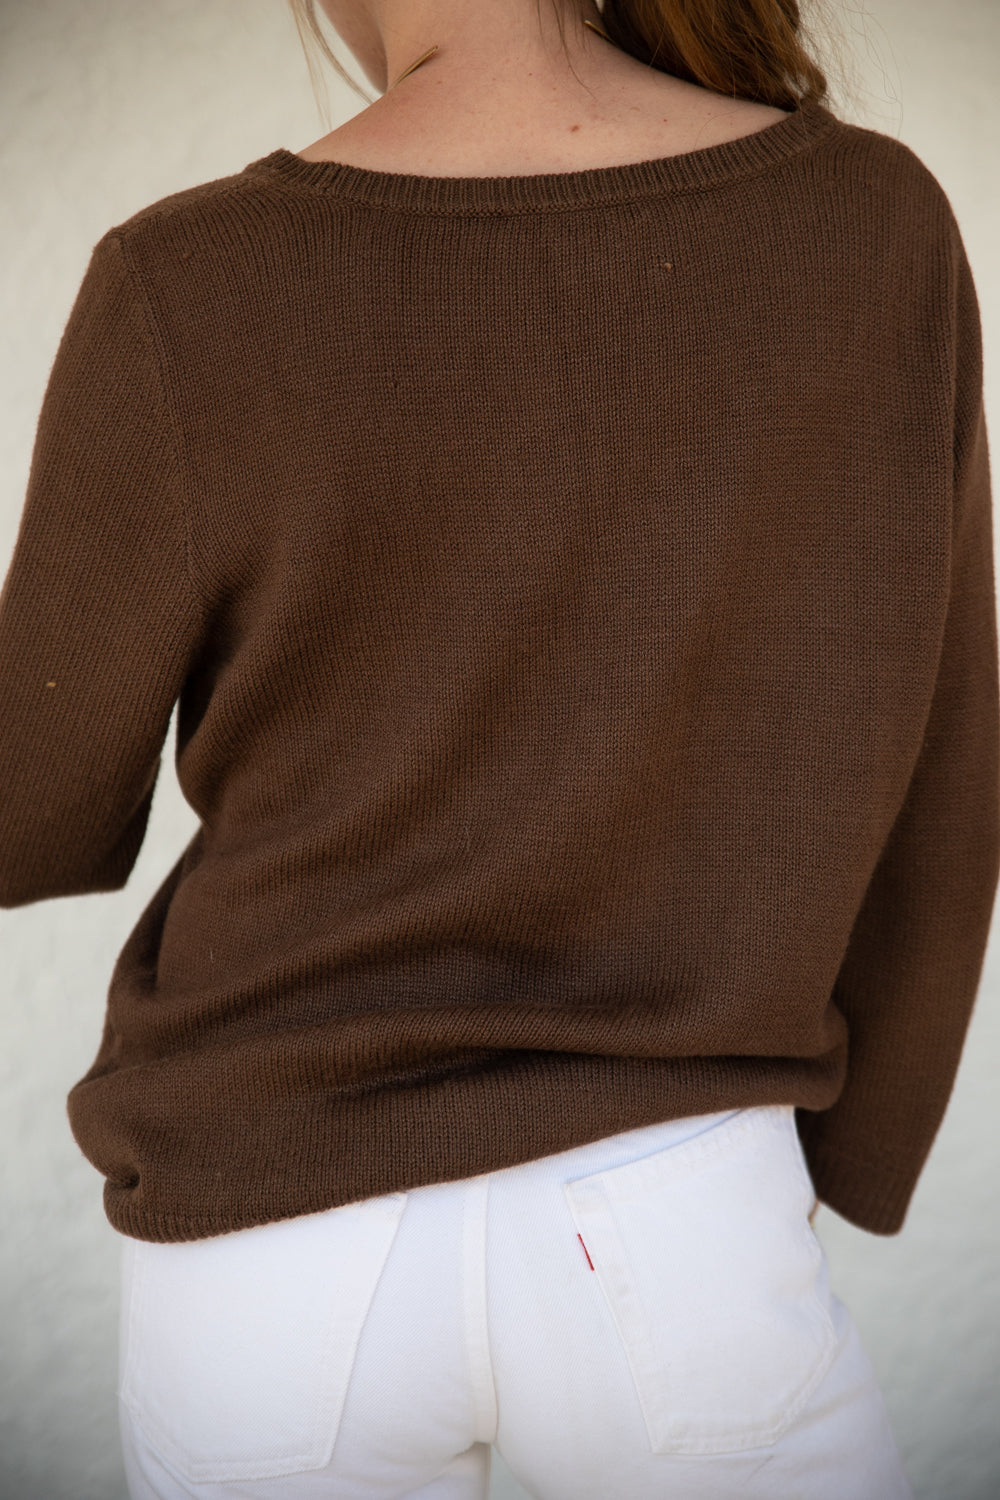 Ralph Lauren Silk Sweater